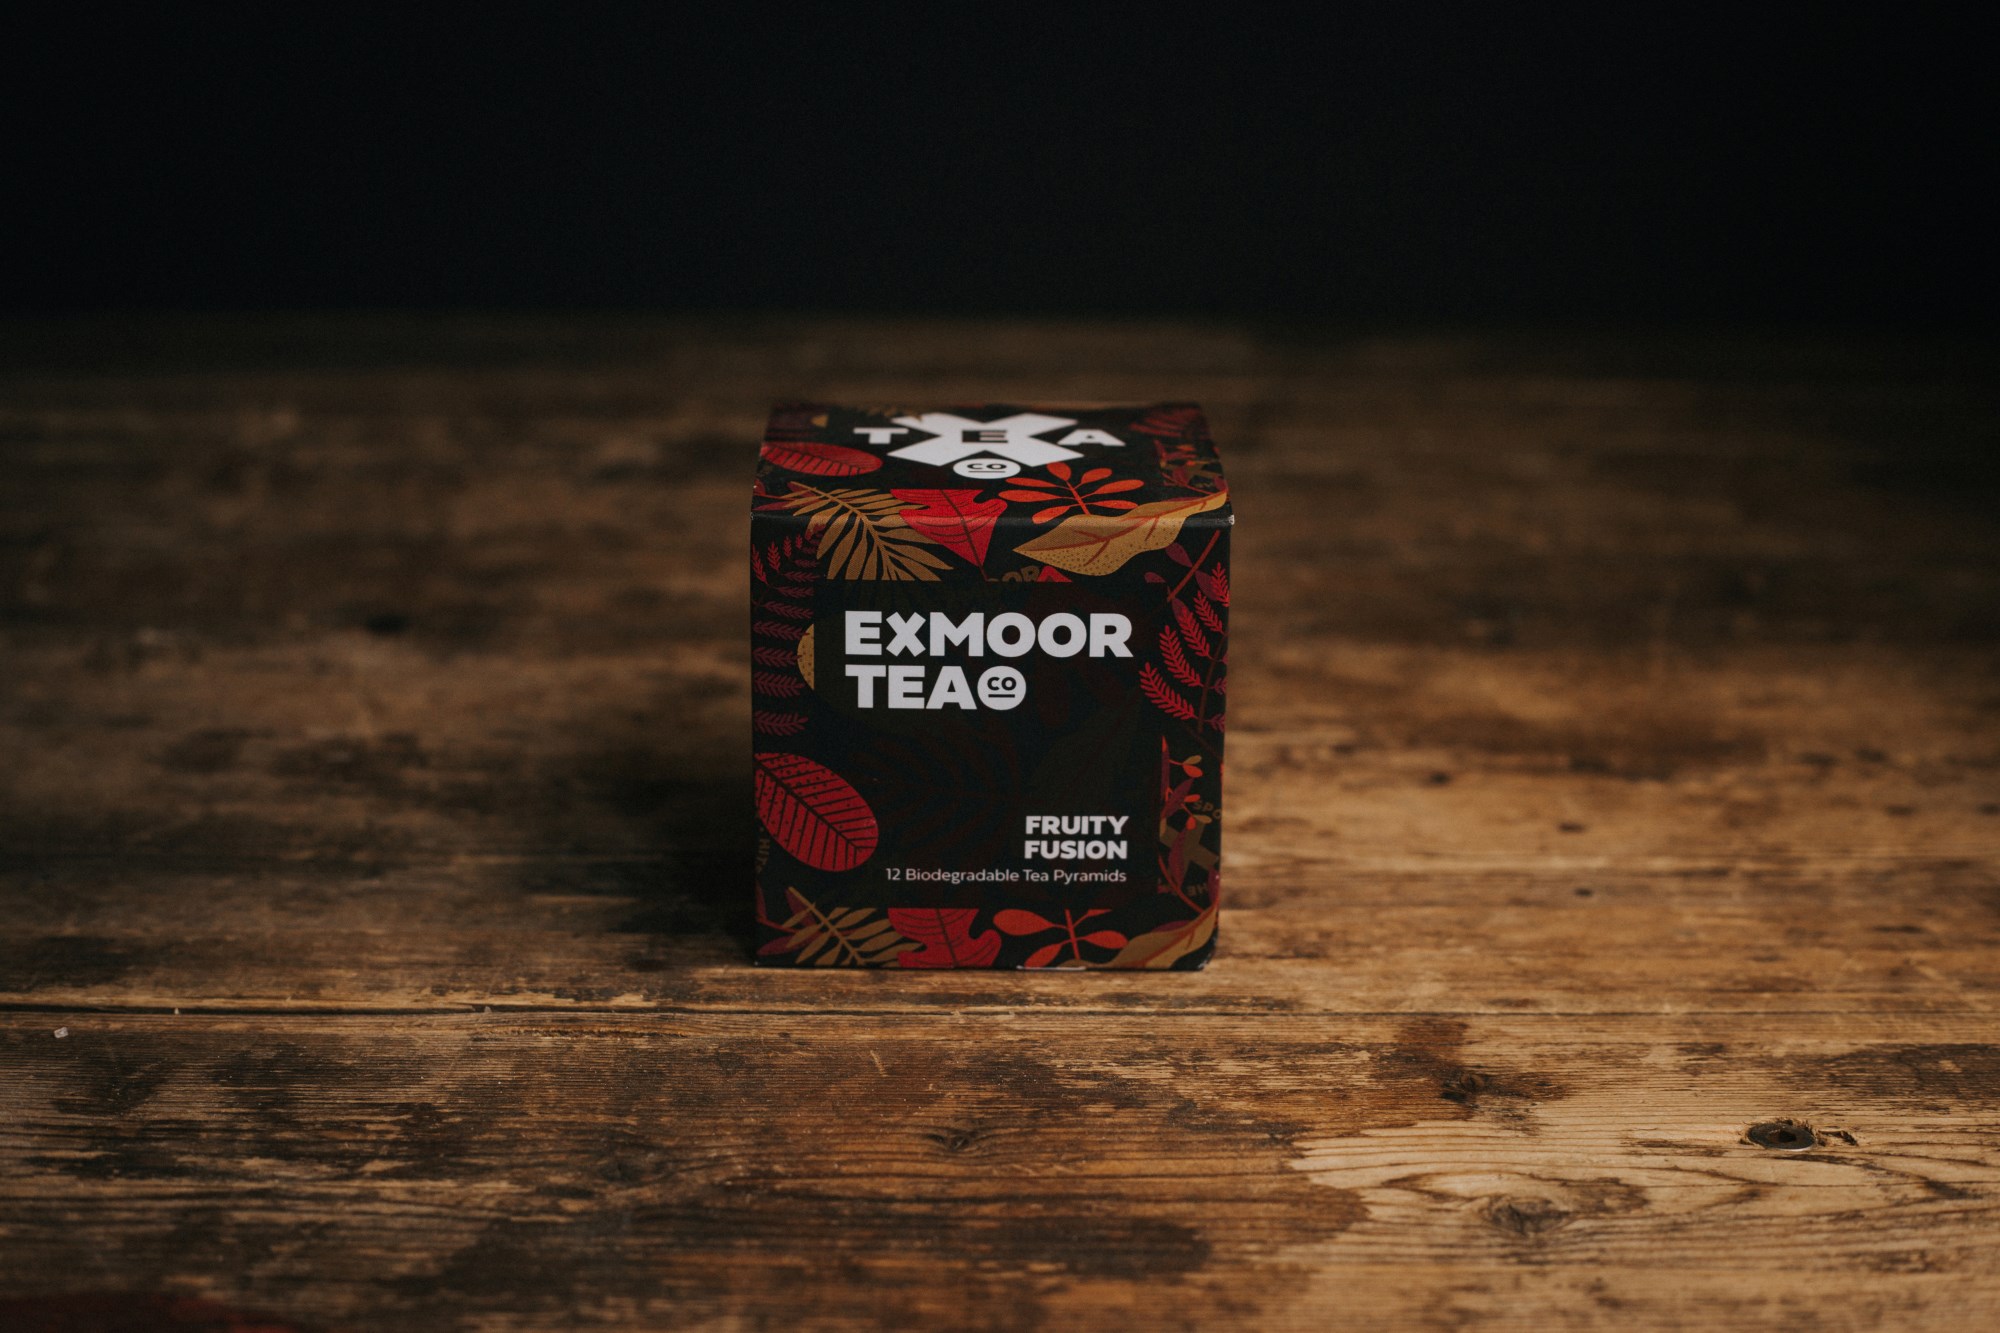 Exmoor Tea Co. Fruity Fusion Tea Pyramids